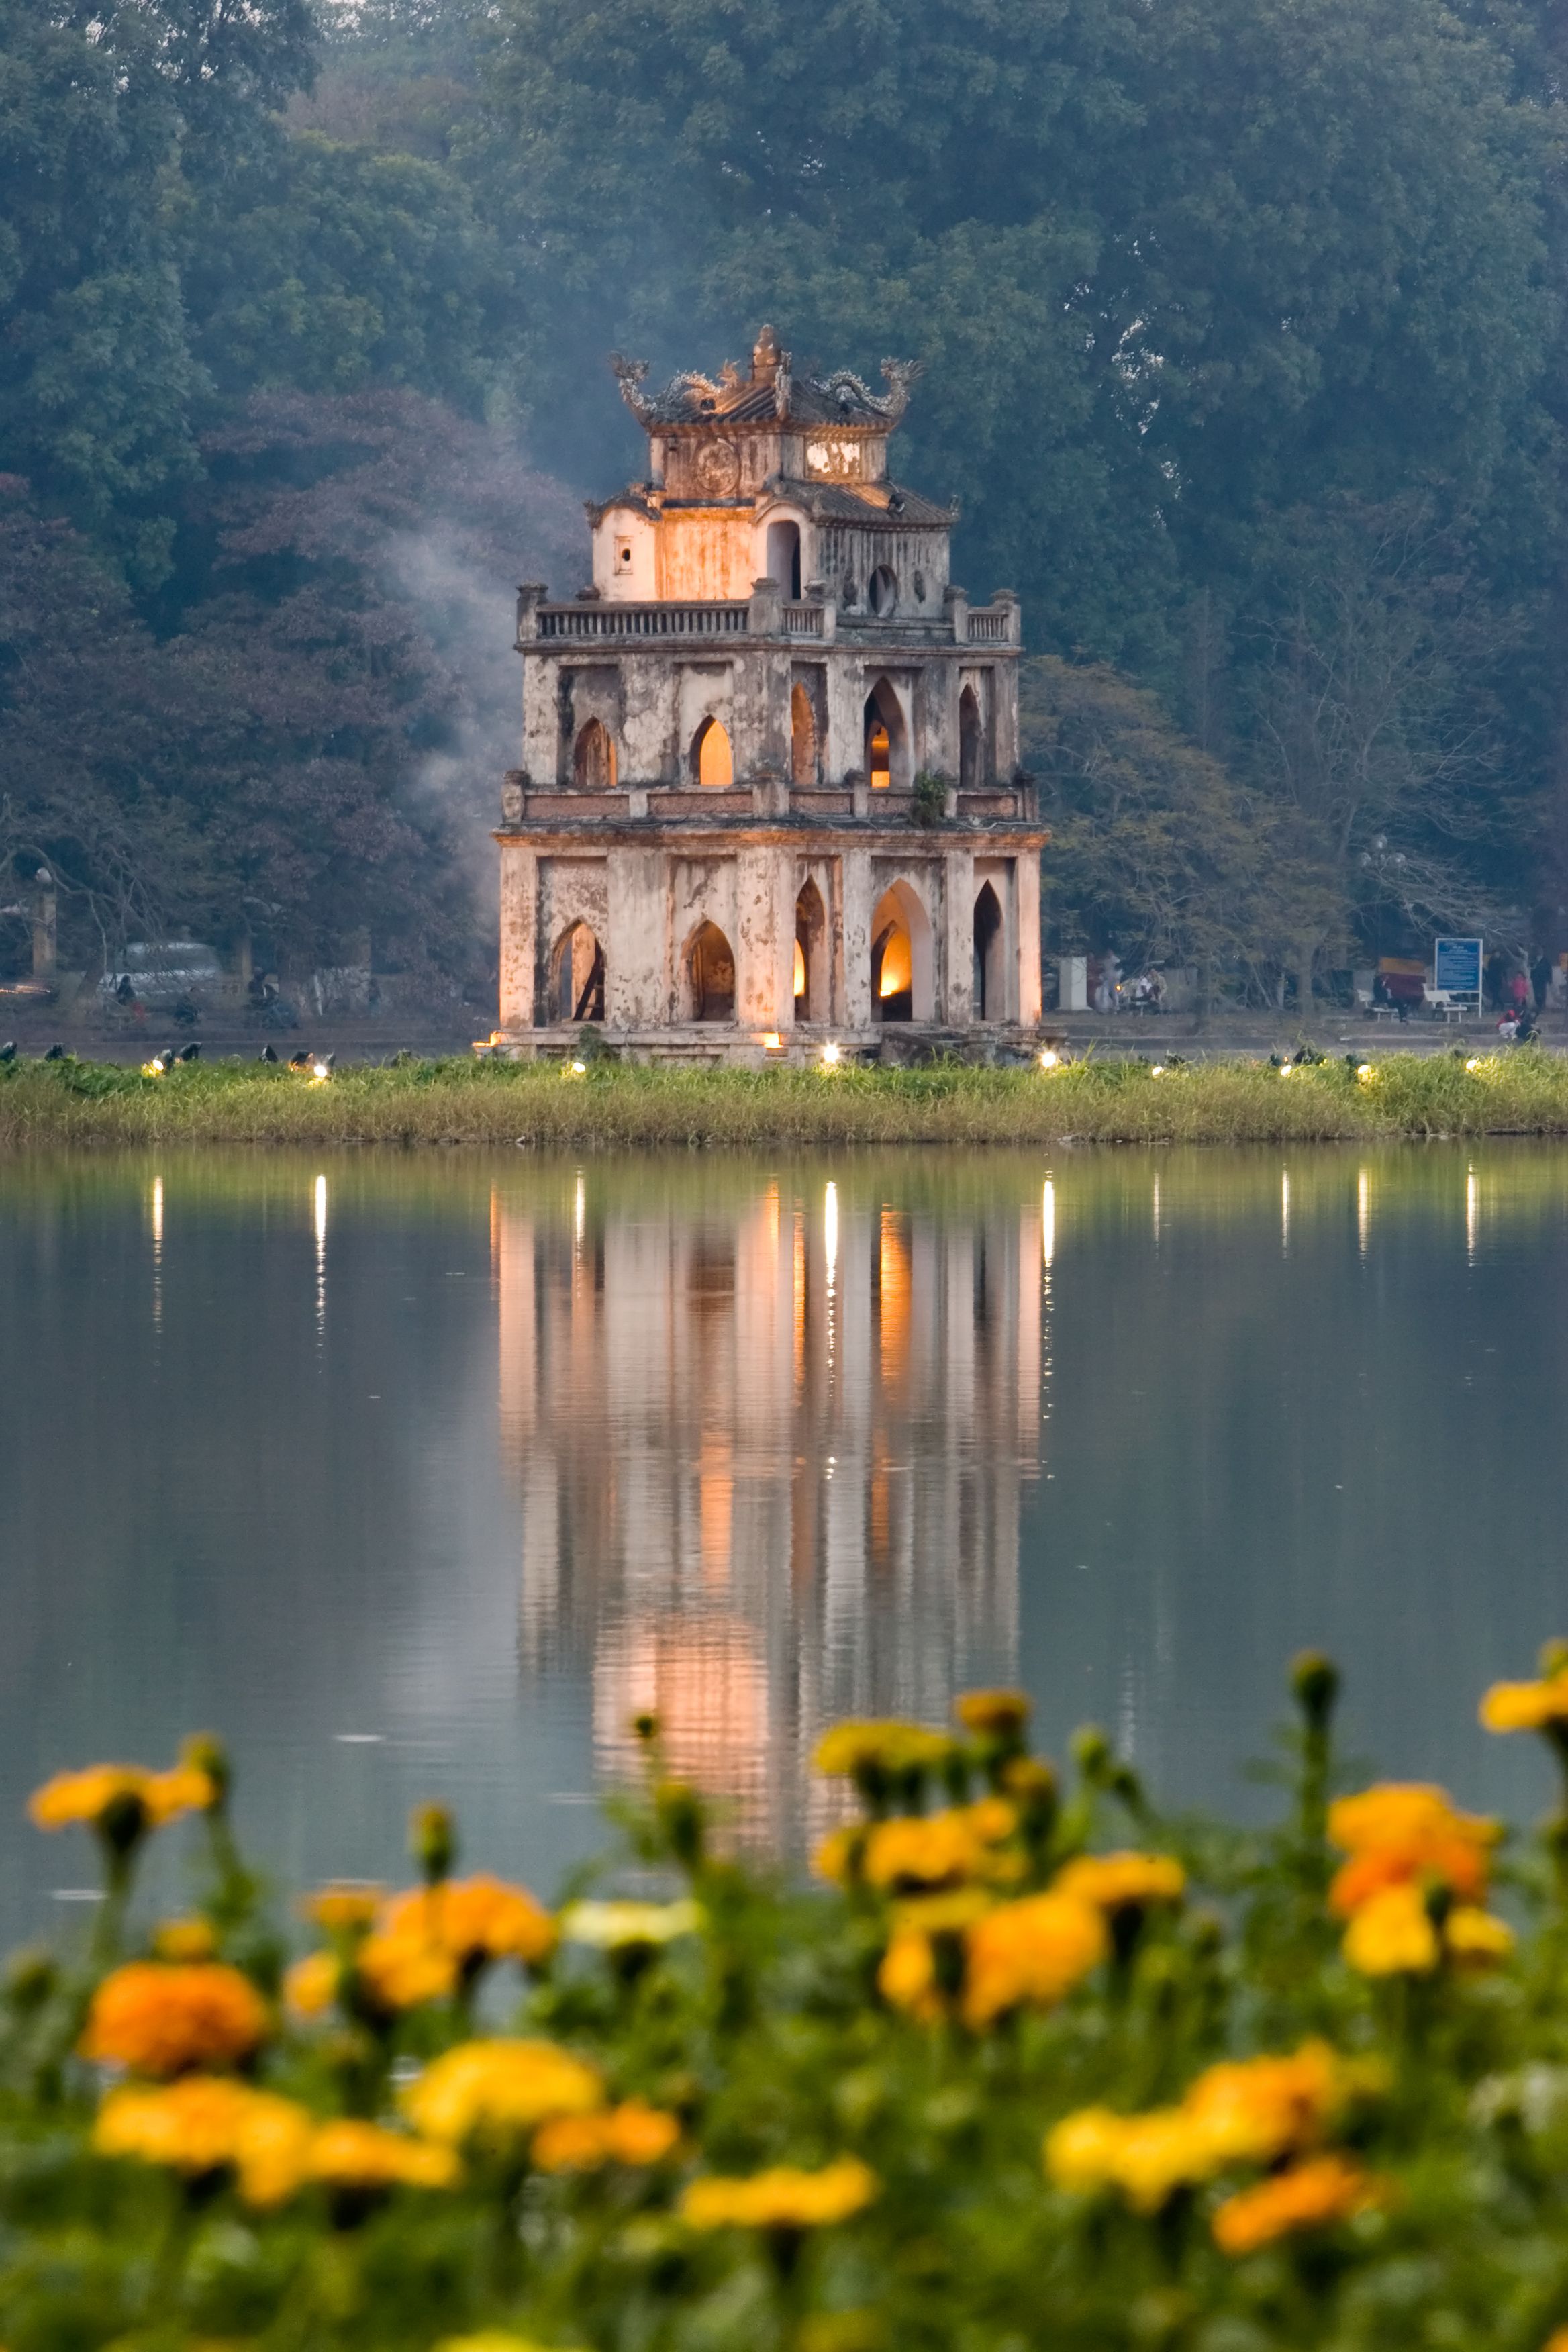 Hình ảnh Hồ Gươm đẹp mang ý nghĩa lịch sử sâu sắc Việt Nam